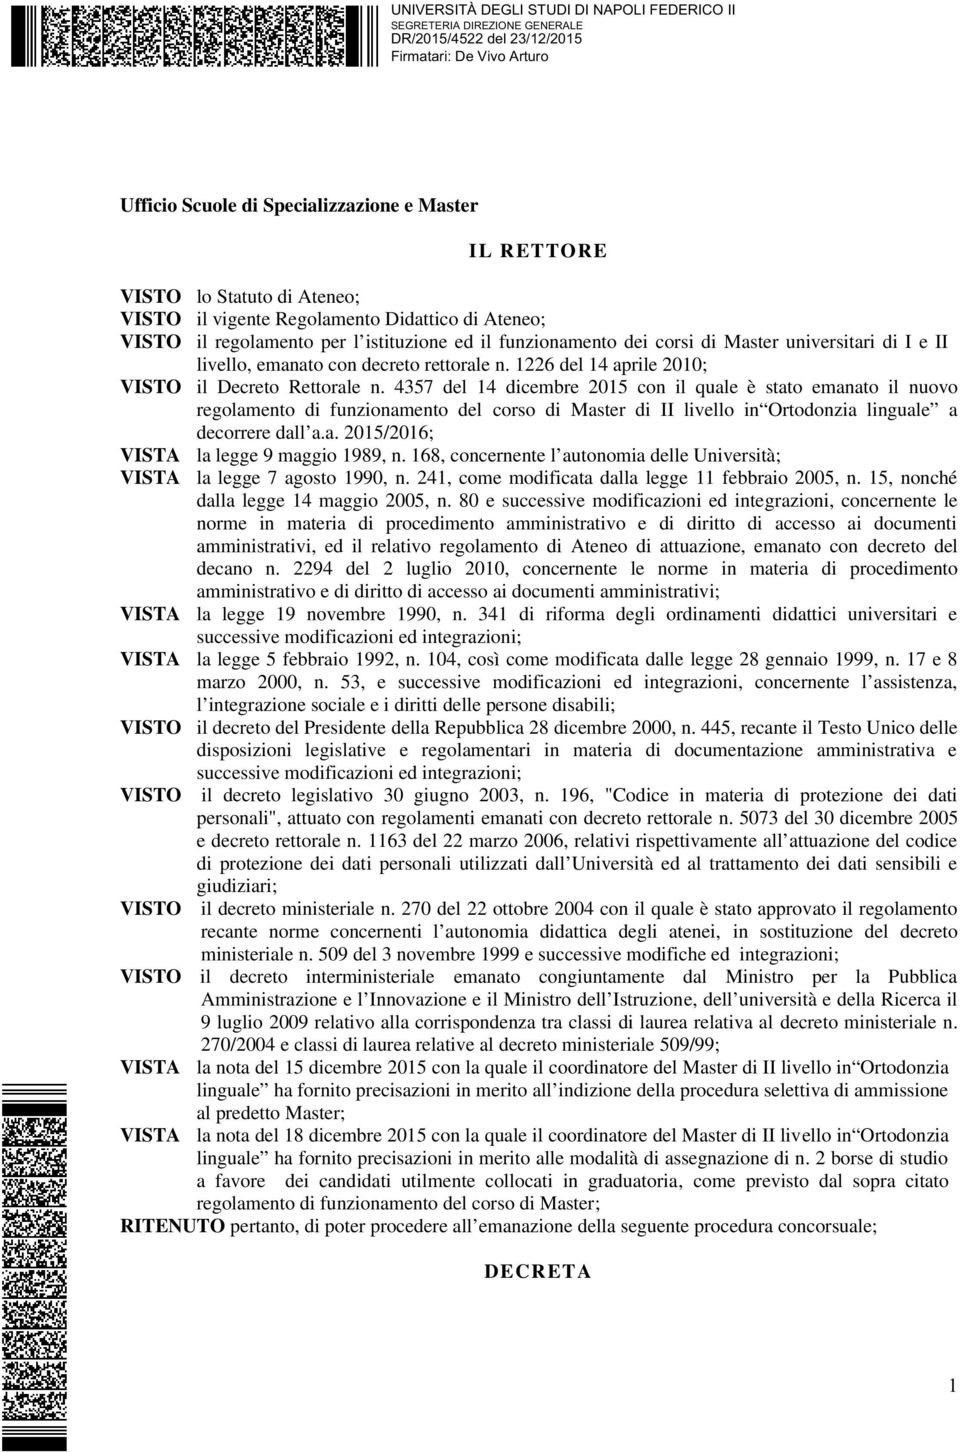 4357 del 14 dicembre 2015 con il quale è stato emanato il nuovo regolamento di funzionamento del corso di Master di II livello in Ortodonzia linguale a decorrere dall a.a. 2015/2016; VISTA la legge 9 maggio 1989, n.